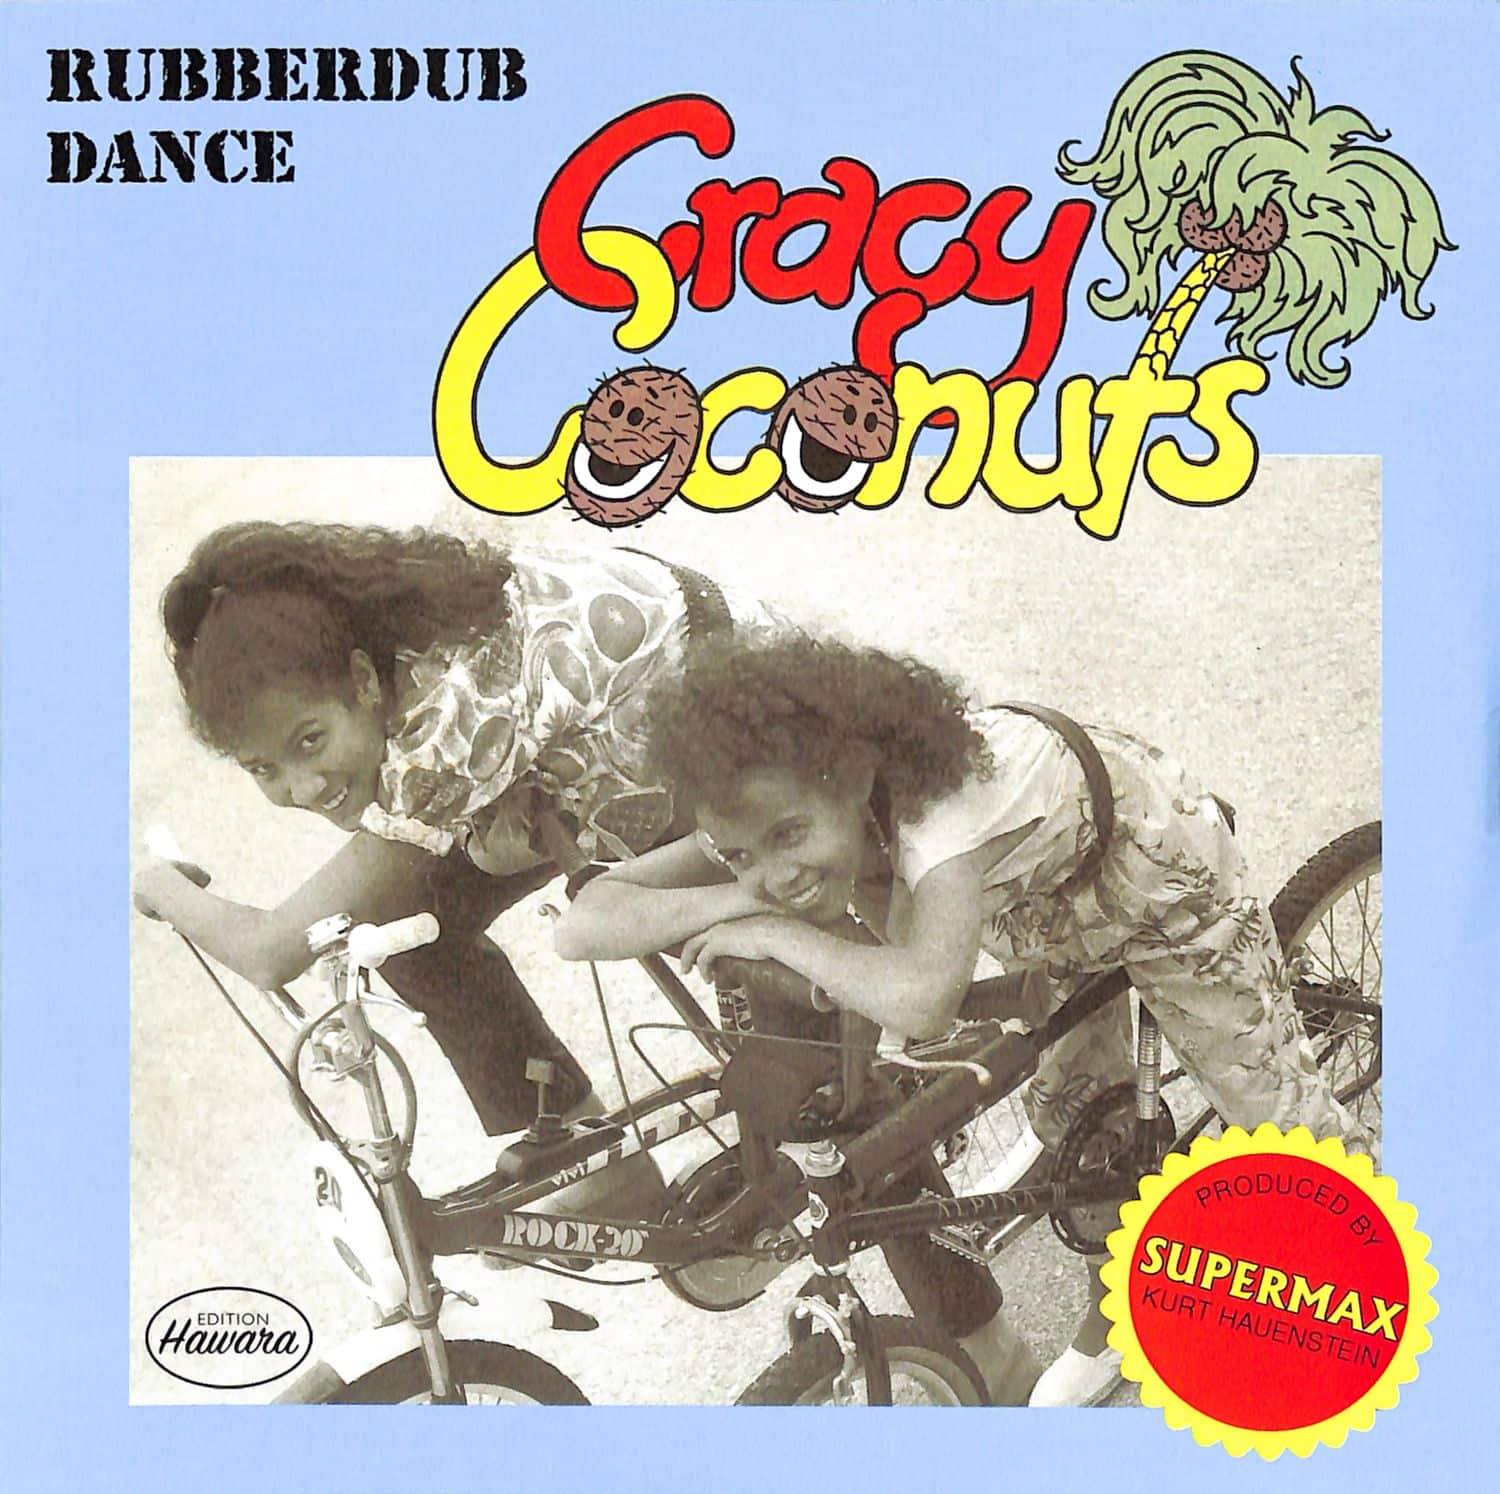 Cracy Coconuts - RUBBERDUB DANCE 